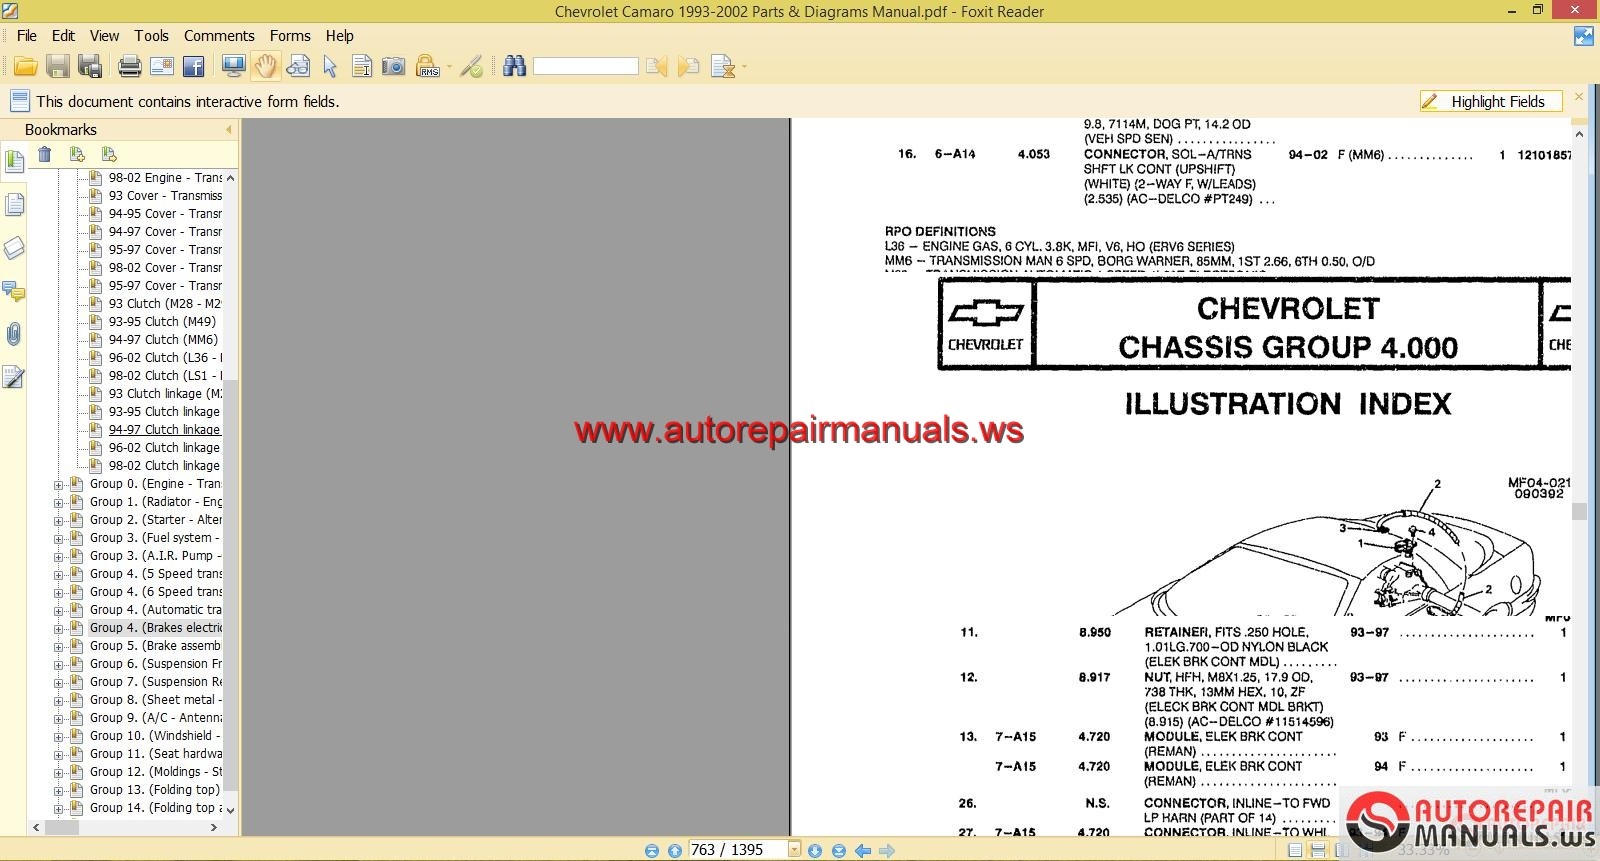 Chevrolet Camaro 1993-2002 Parts &amp; Diagrams Manual | Auto ...